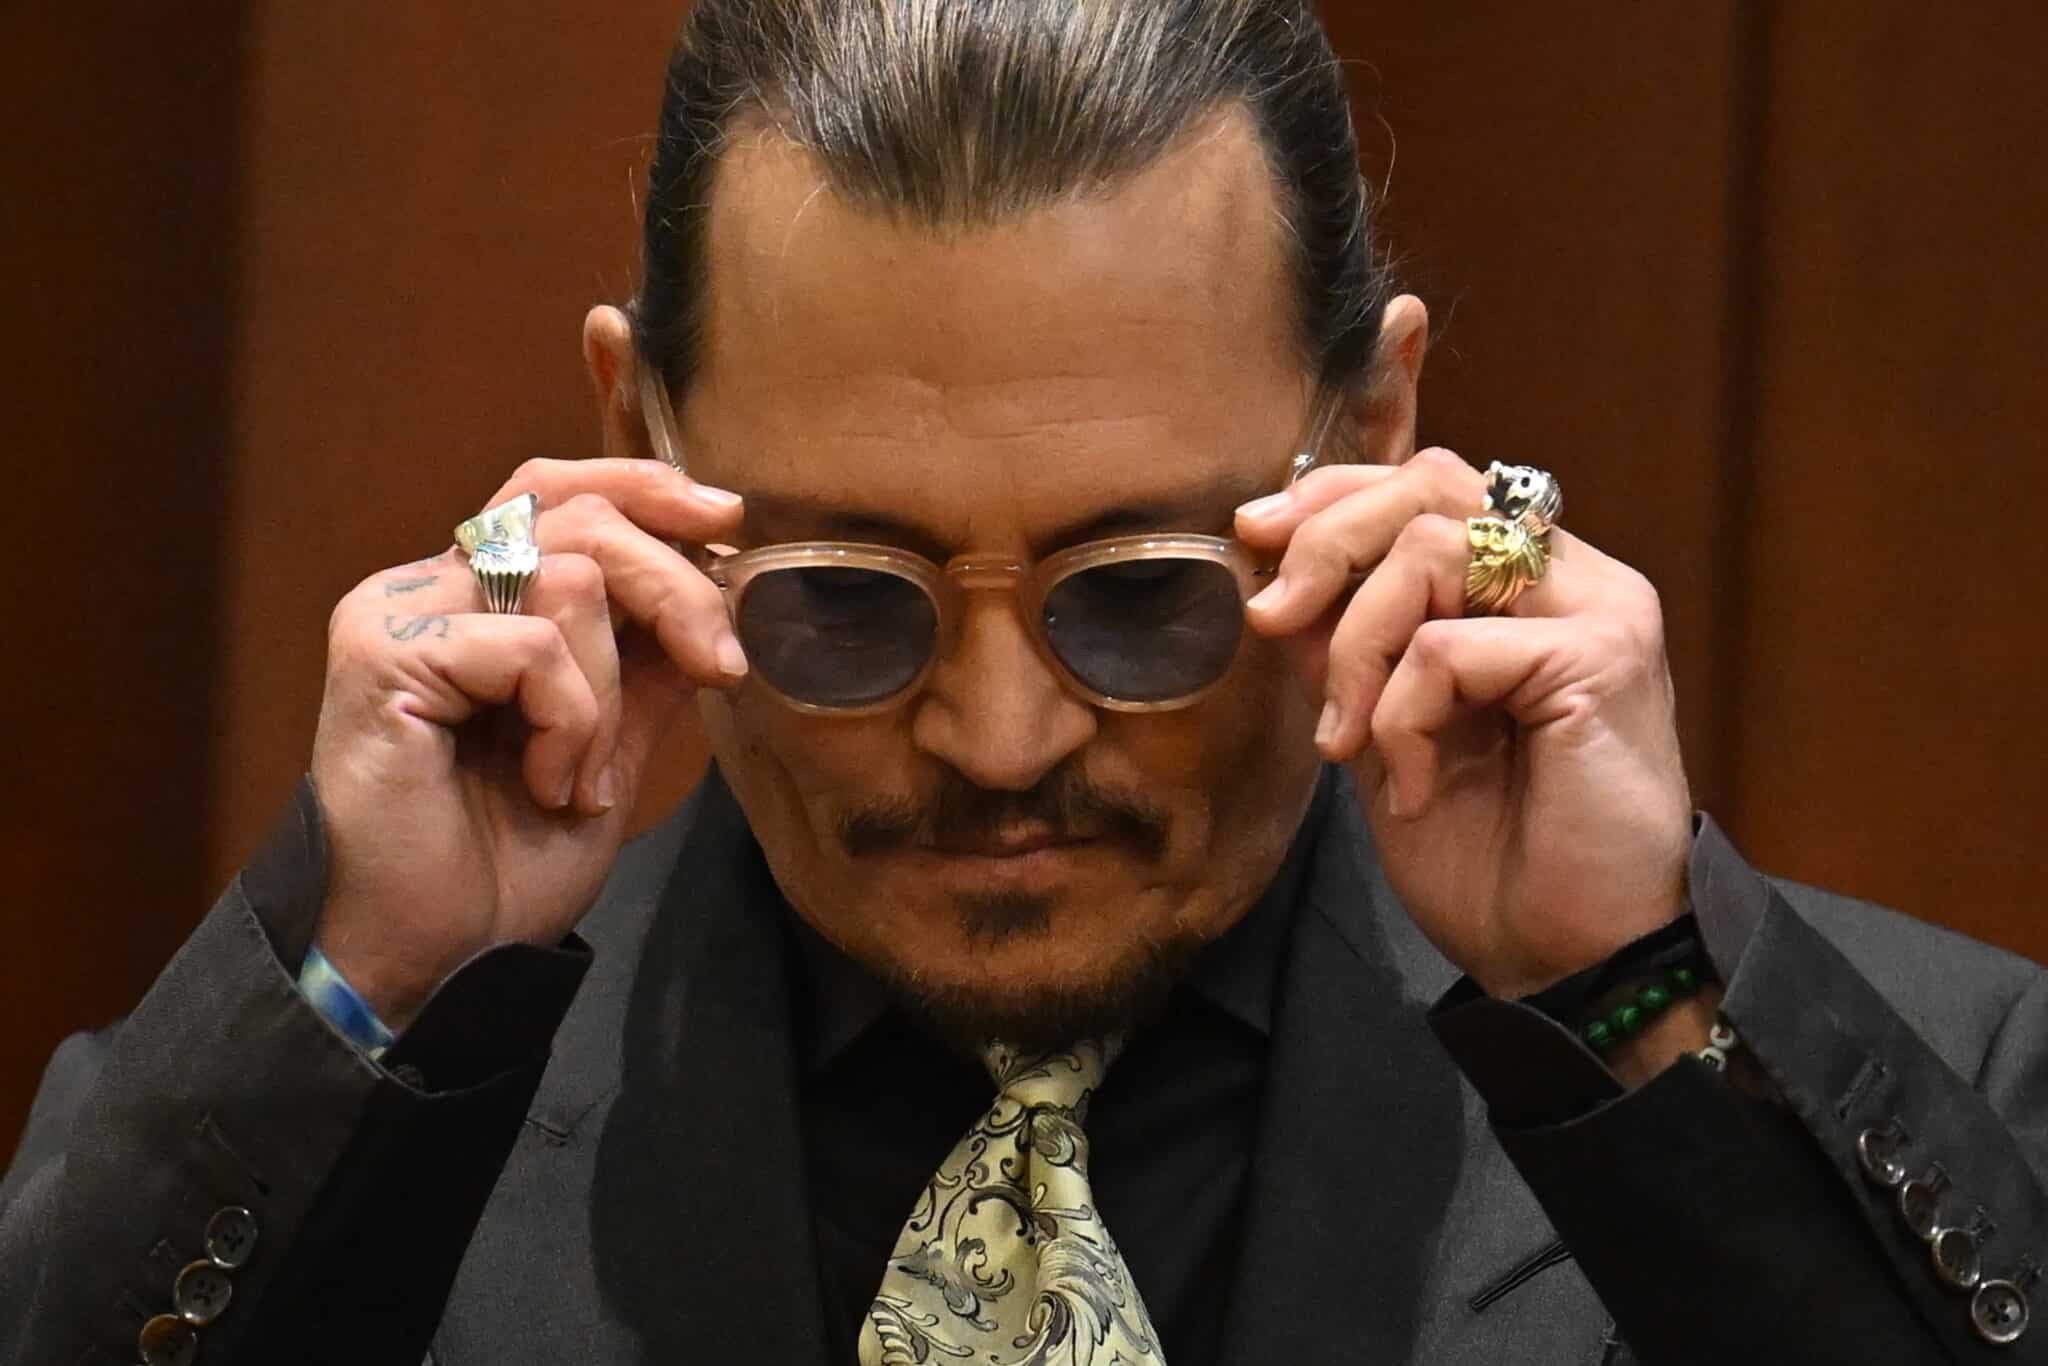 arroz Soledad Misericordioso El último juicio de Johnny Depp desempaña su futuro profesional